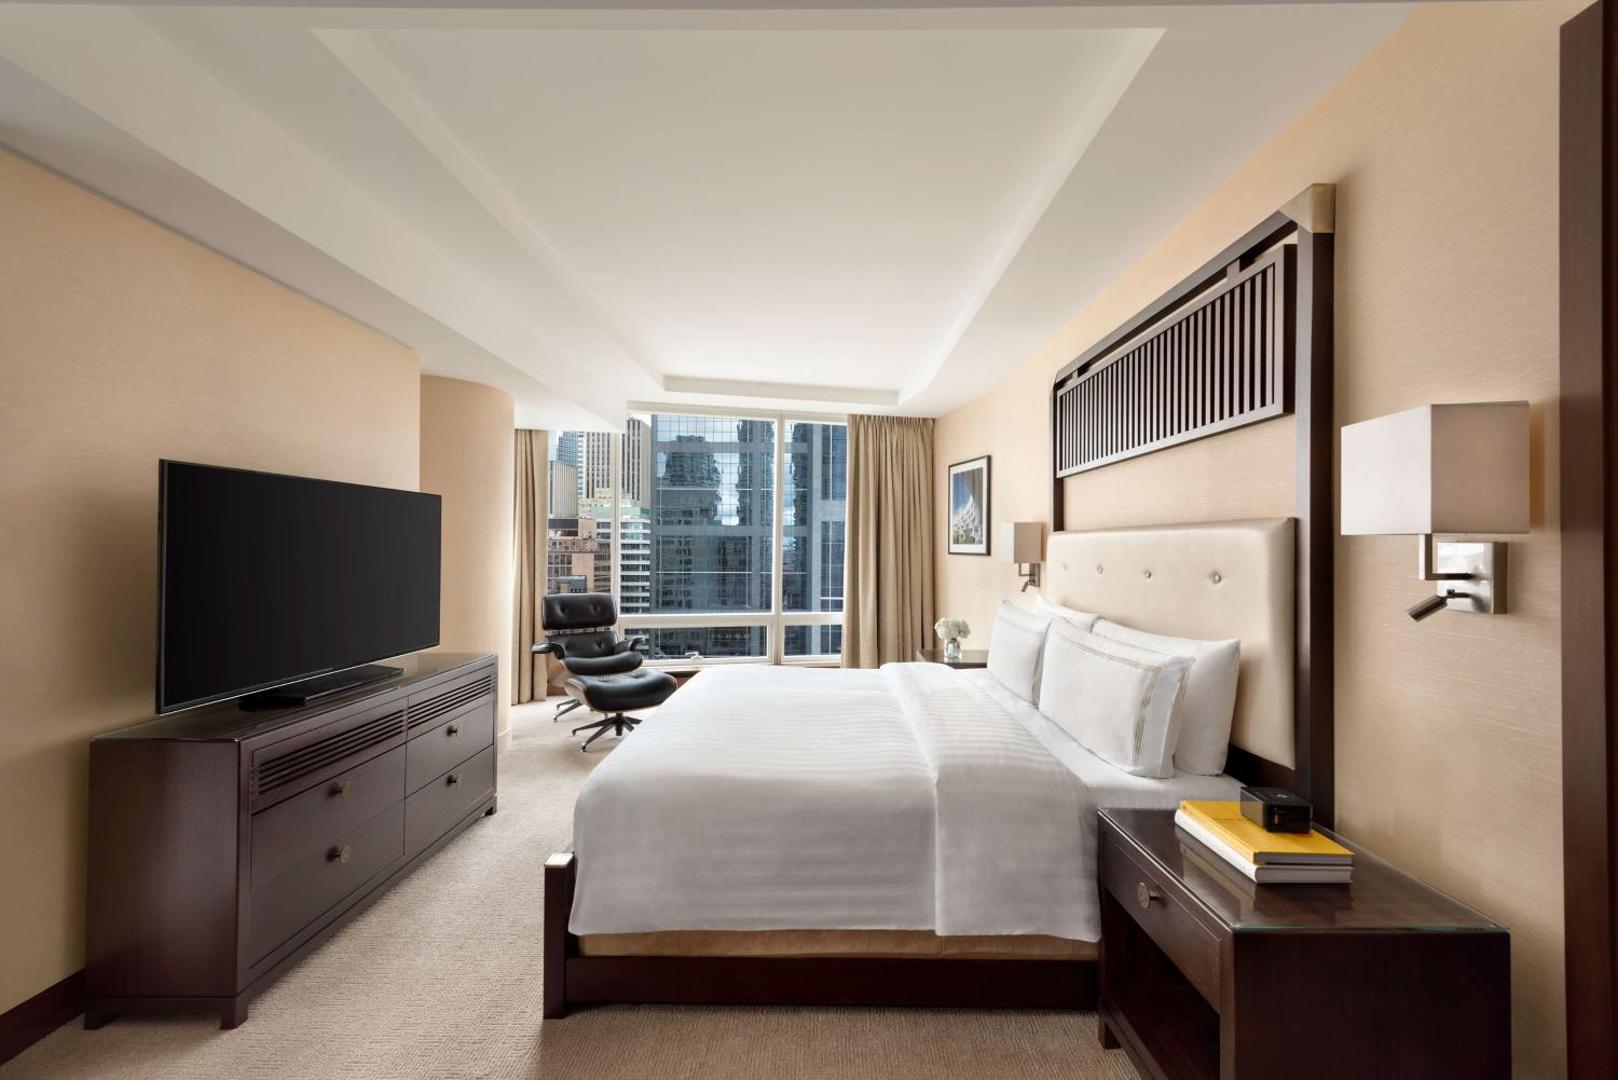 Shangri-La Hotel Toronto